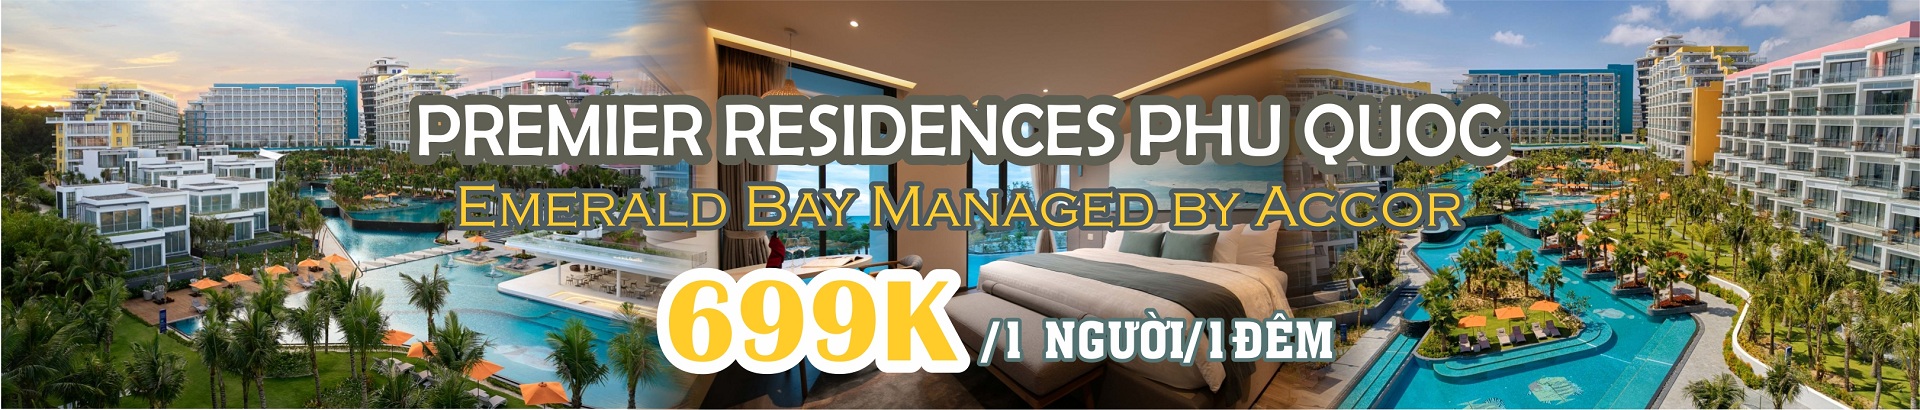 Premier Residences Phu Quoc Emerald Bay khuyến mại chỉ 699k/người/đêm